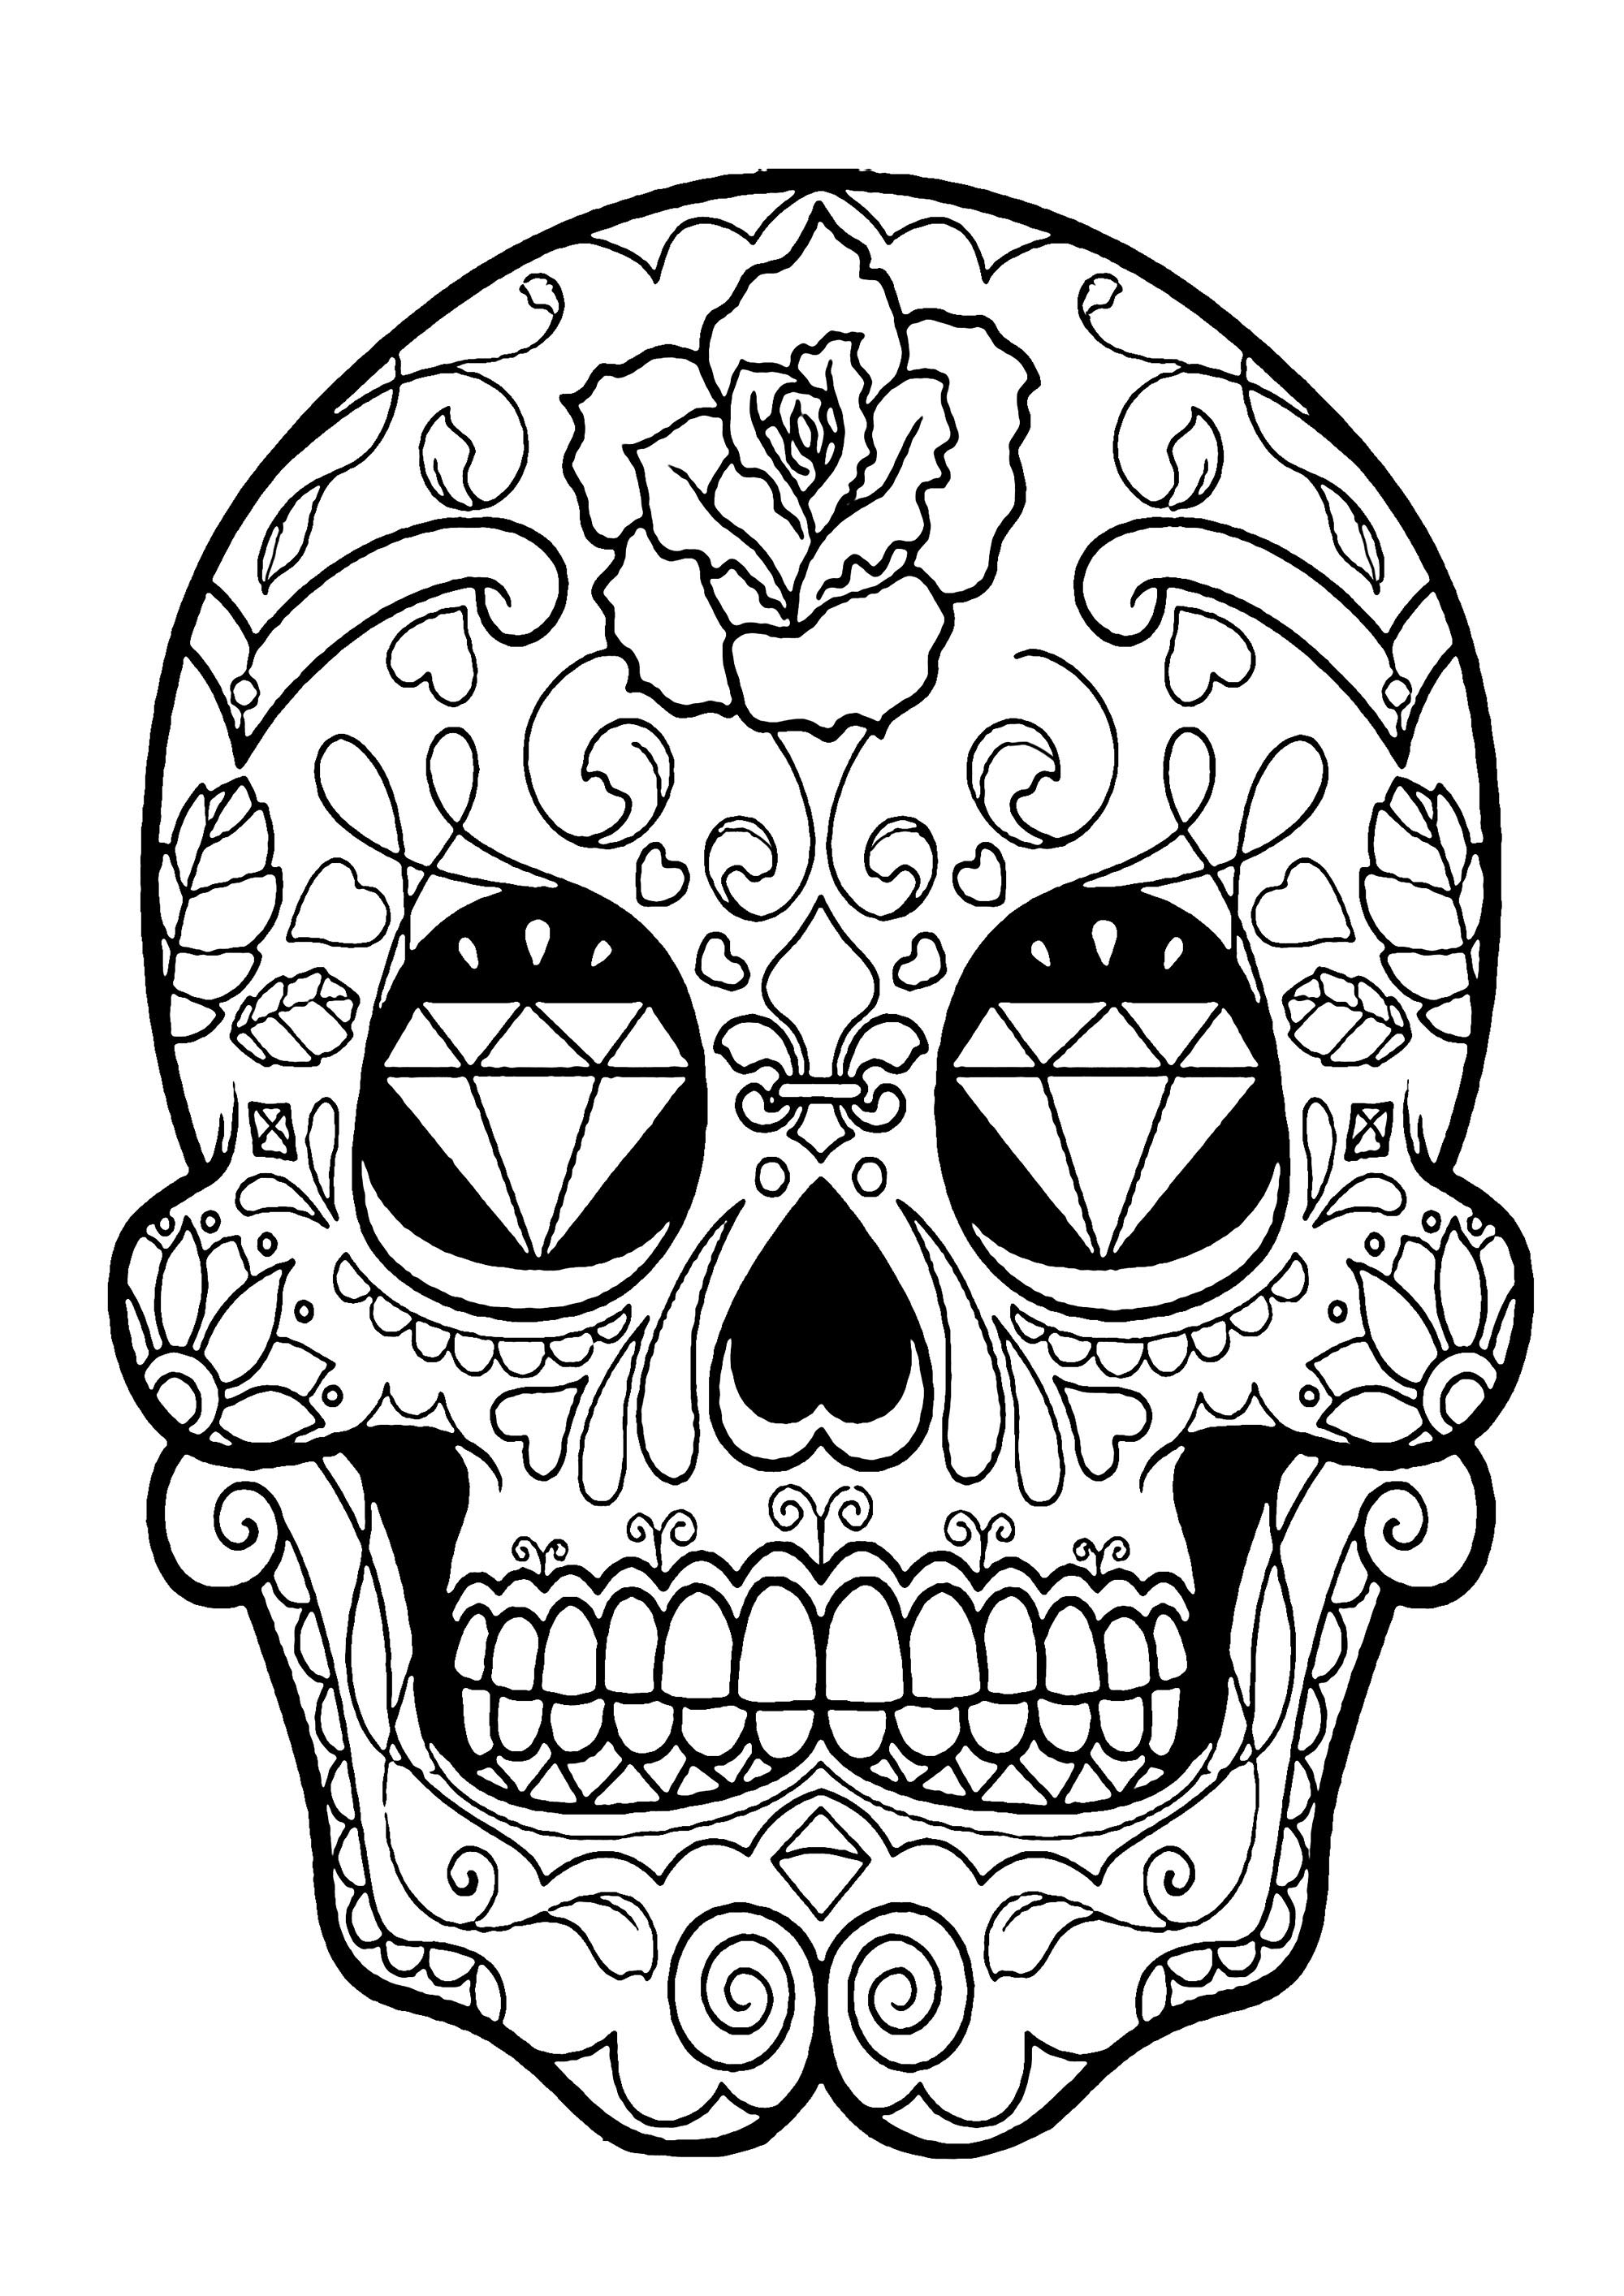 El Día de los Muertos / Day of the dead coloring page : Skull - 5